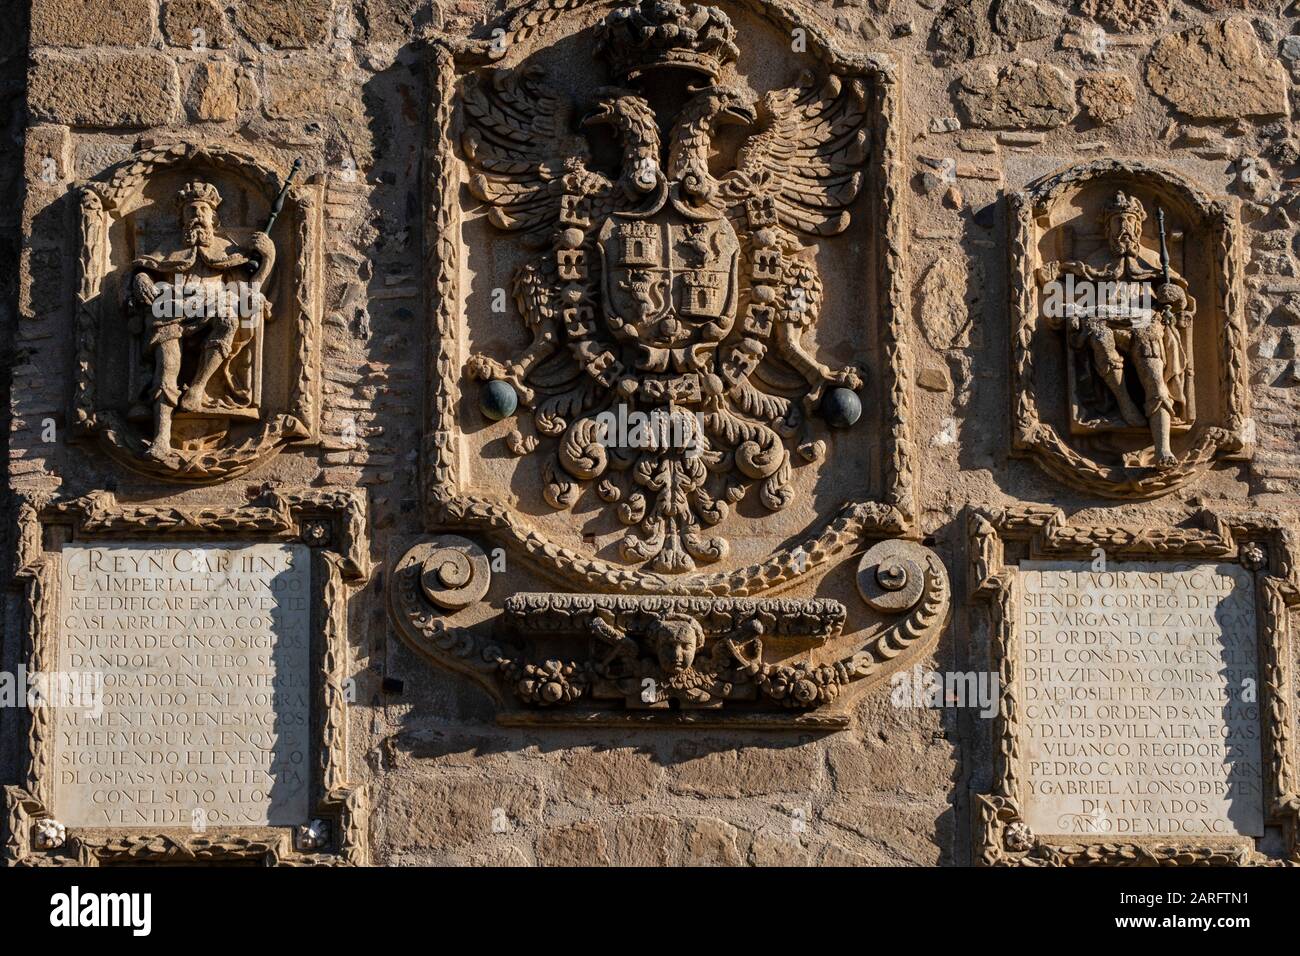 Escudo Imperial Flanqueado por dos reyes, torreon almenado, puente de San Martín, puente Mittelaltersobre el río Tajo, Toledo, Castilla-La Mancha, Stockfoto